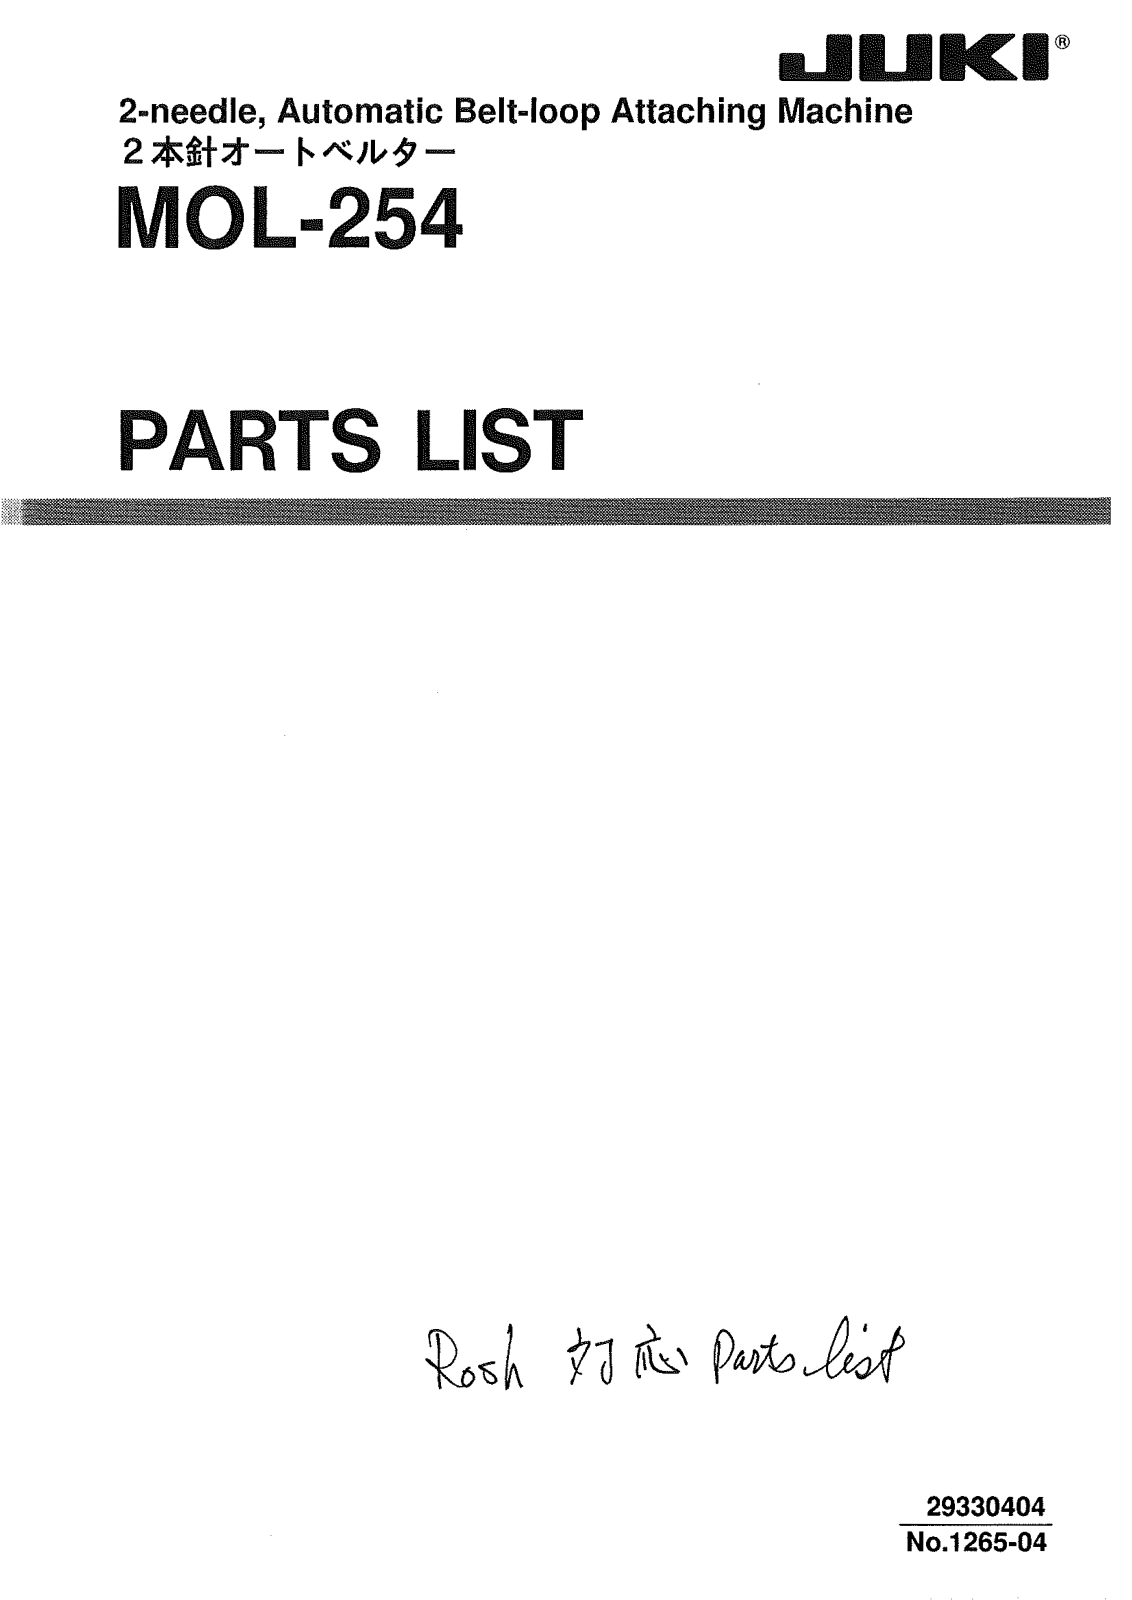 Juki MOL-254 Parts List